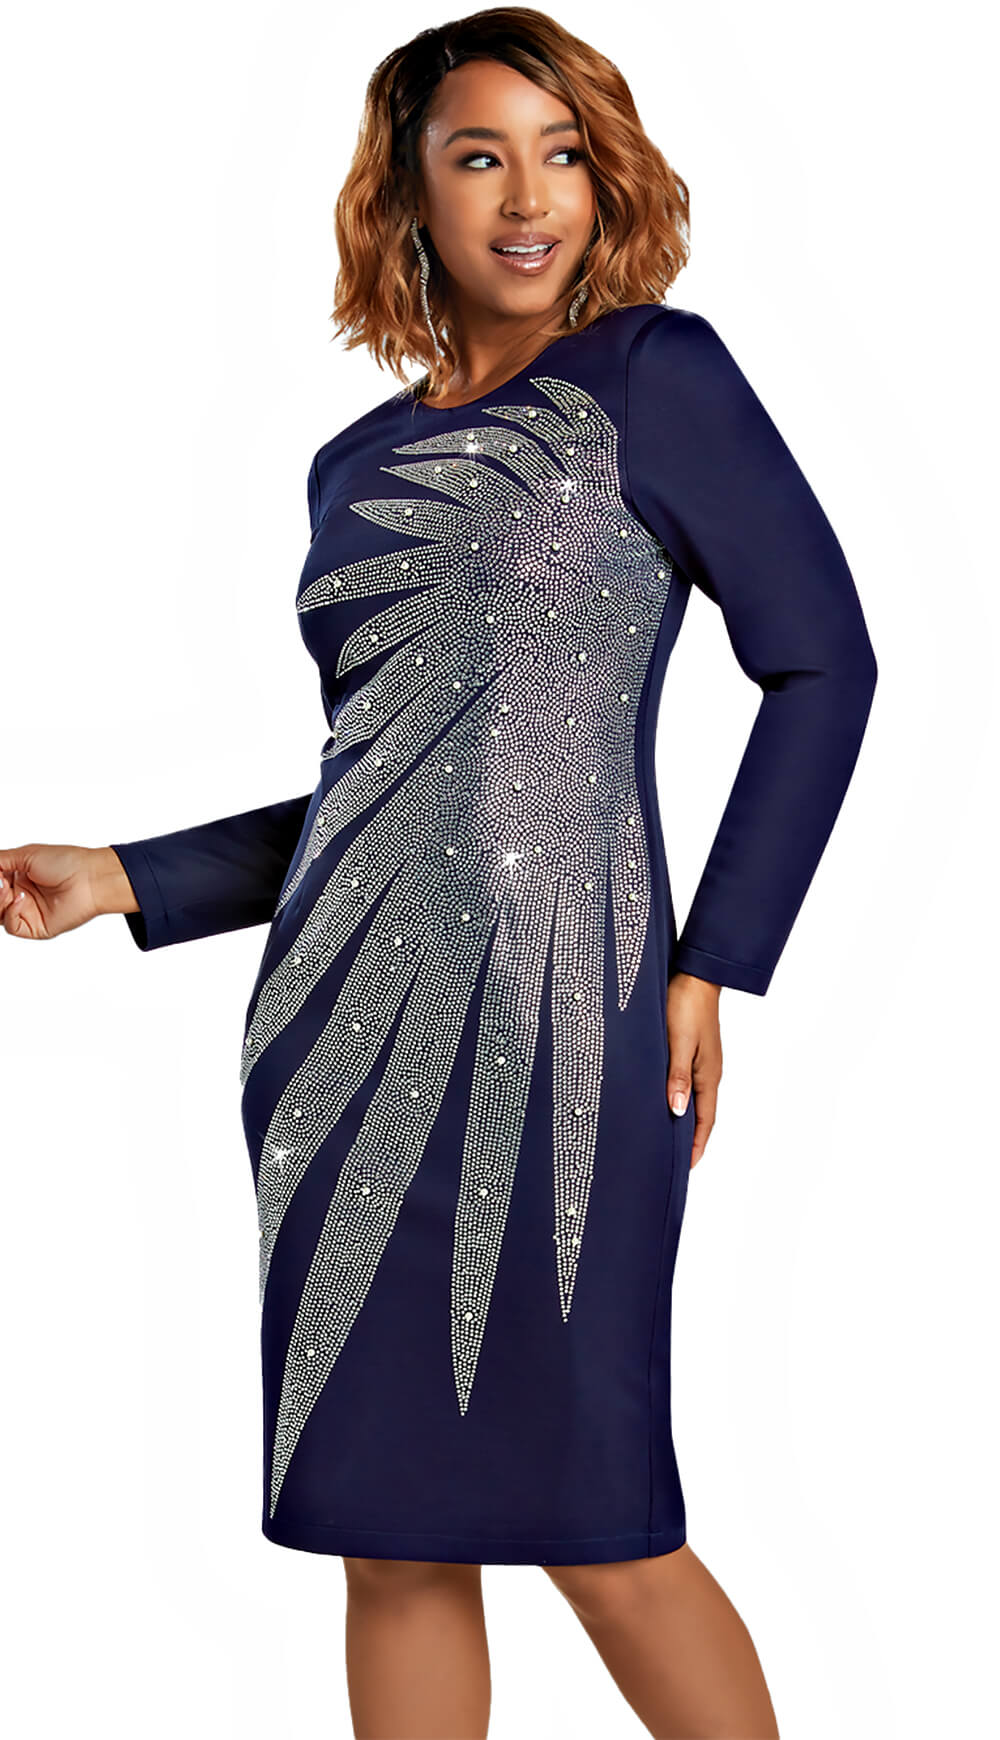 Donnavinci 1 Piece Dress 12100-NVY Size 8-20